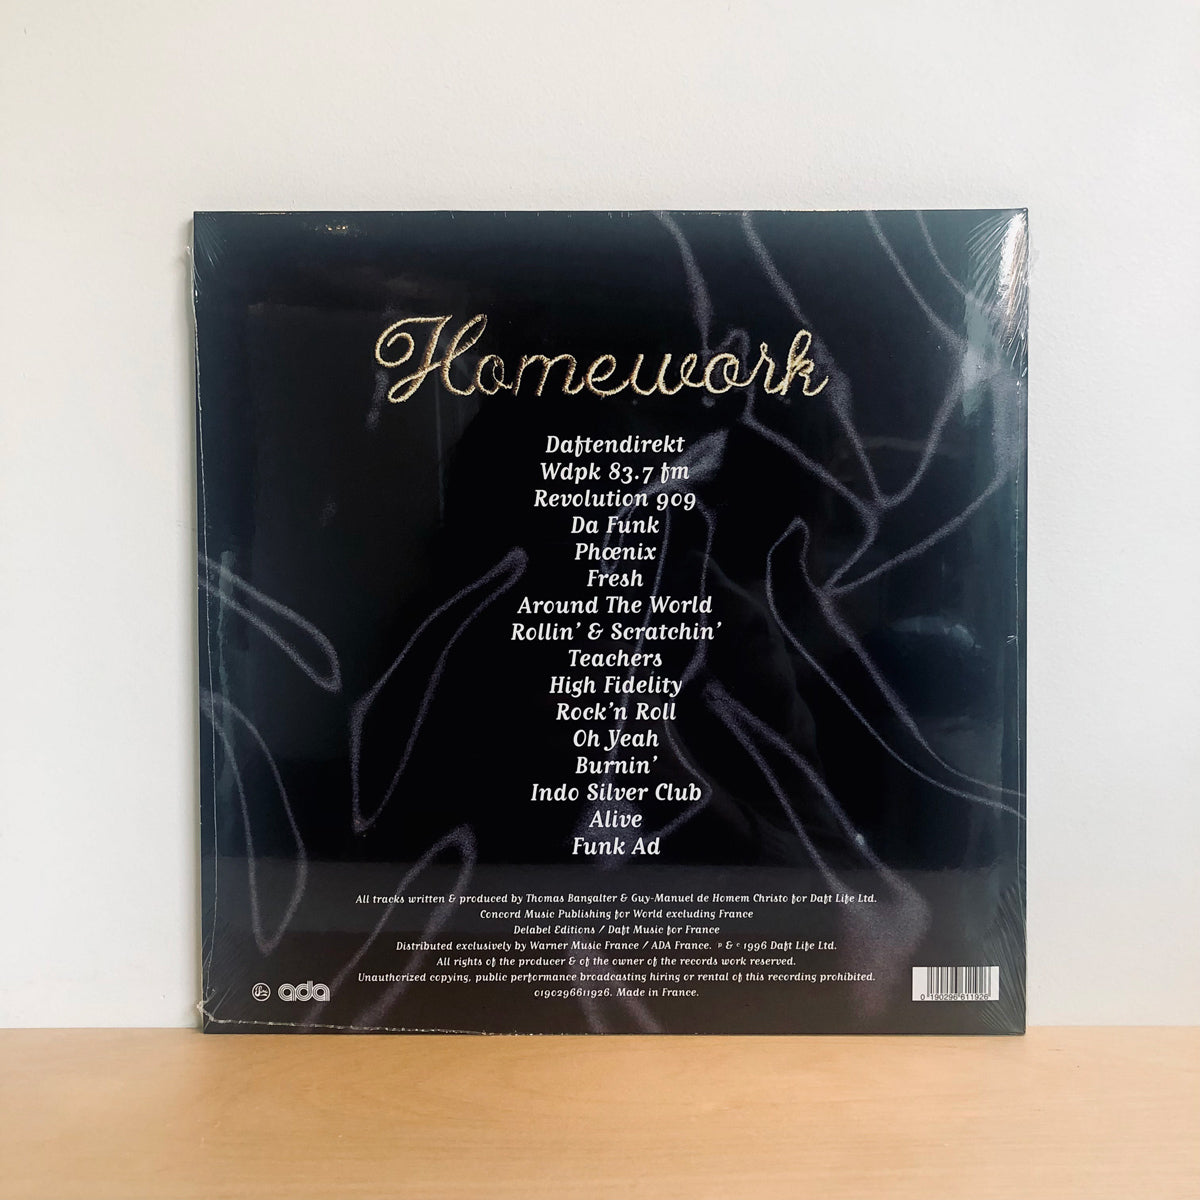 homework vinyl reissue